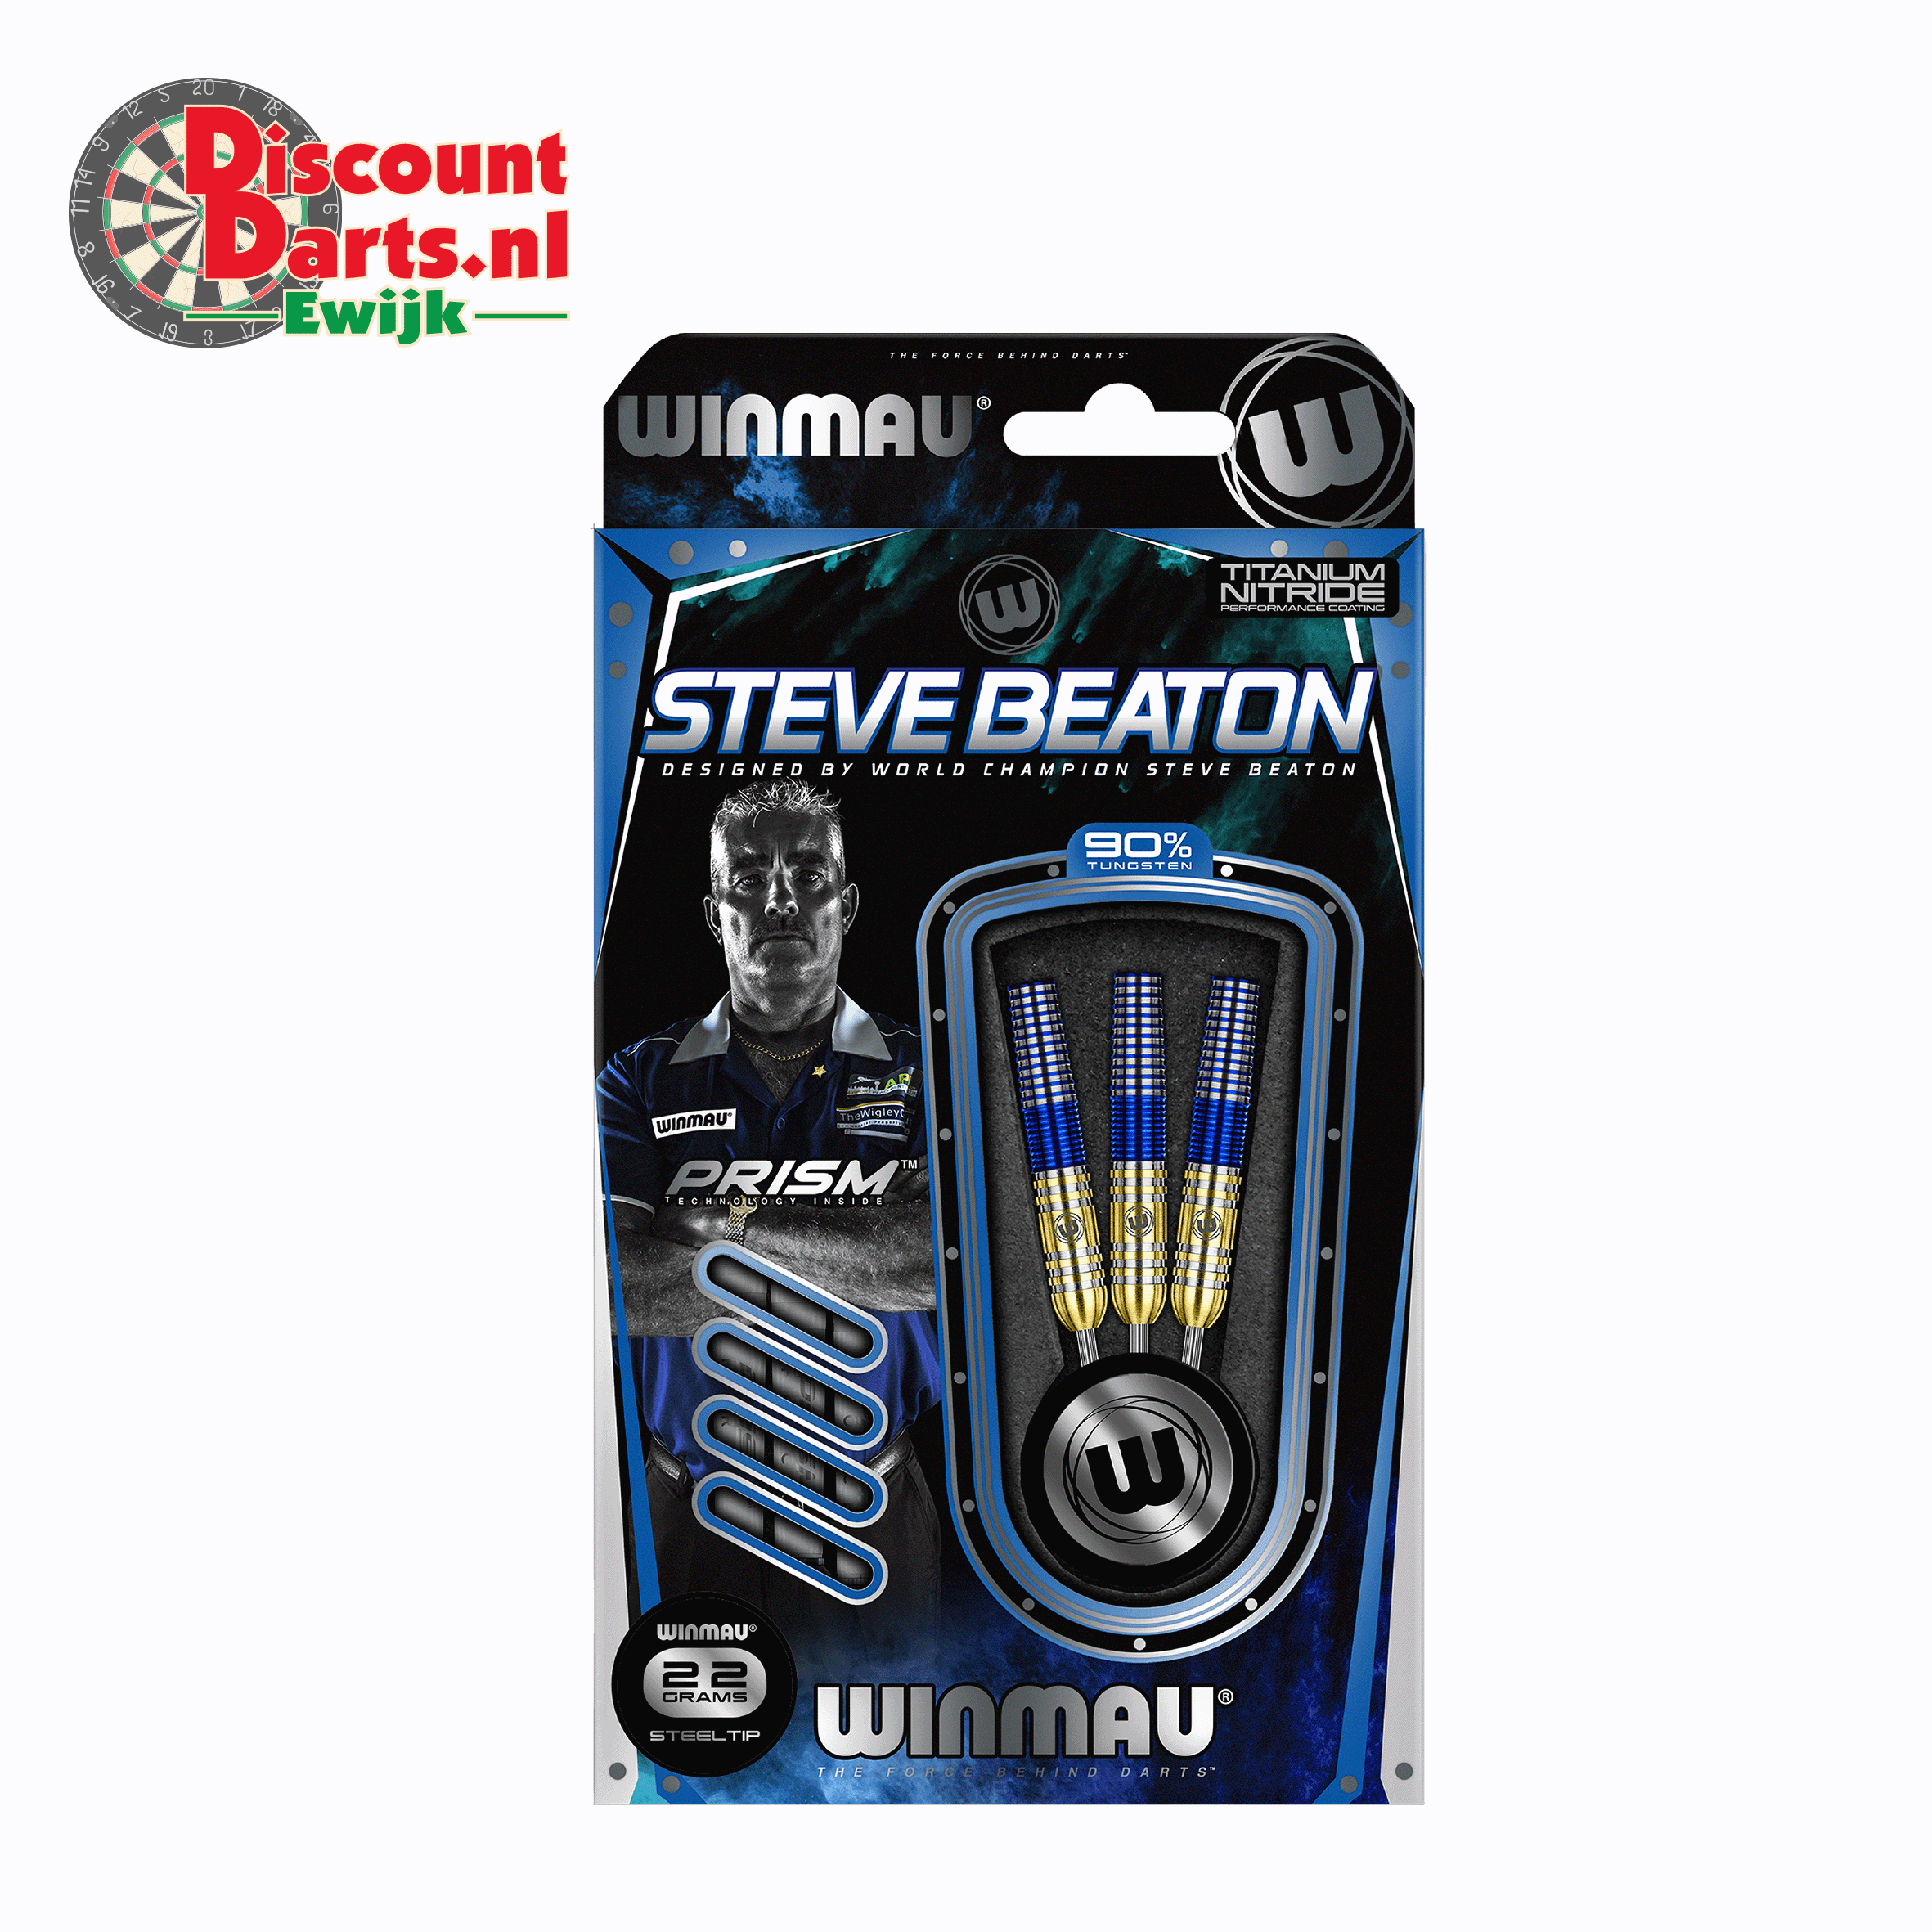 Steve Beaton | 22 Gram